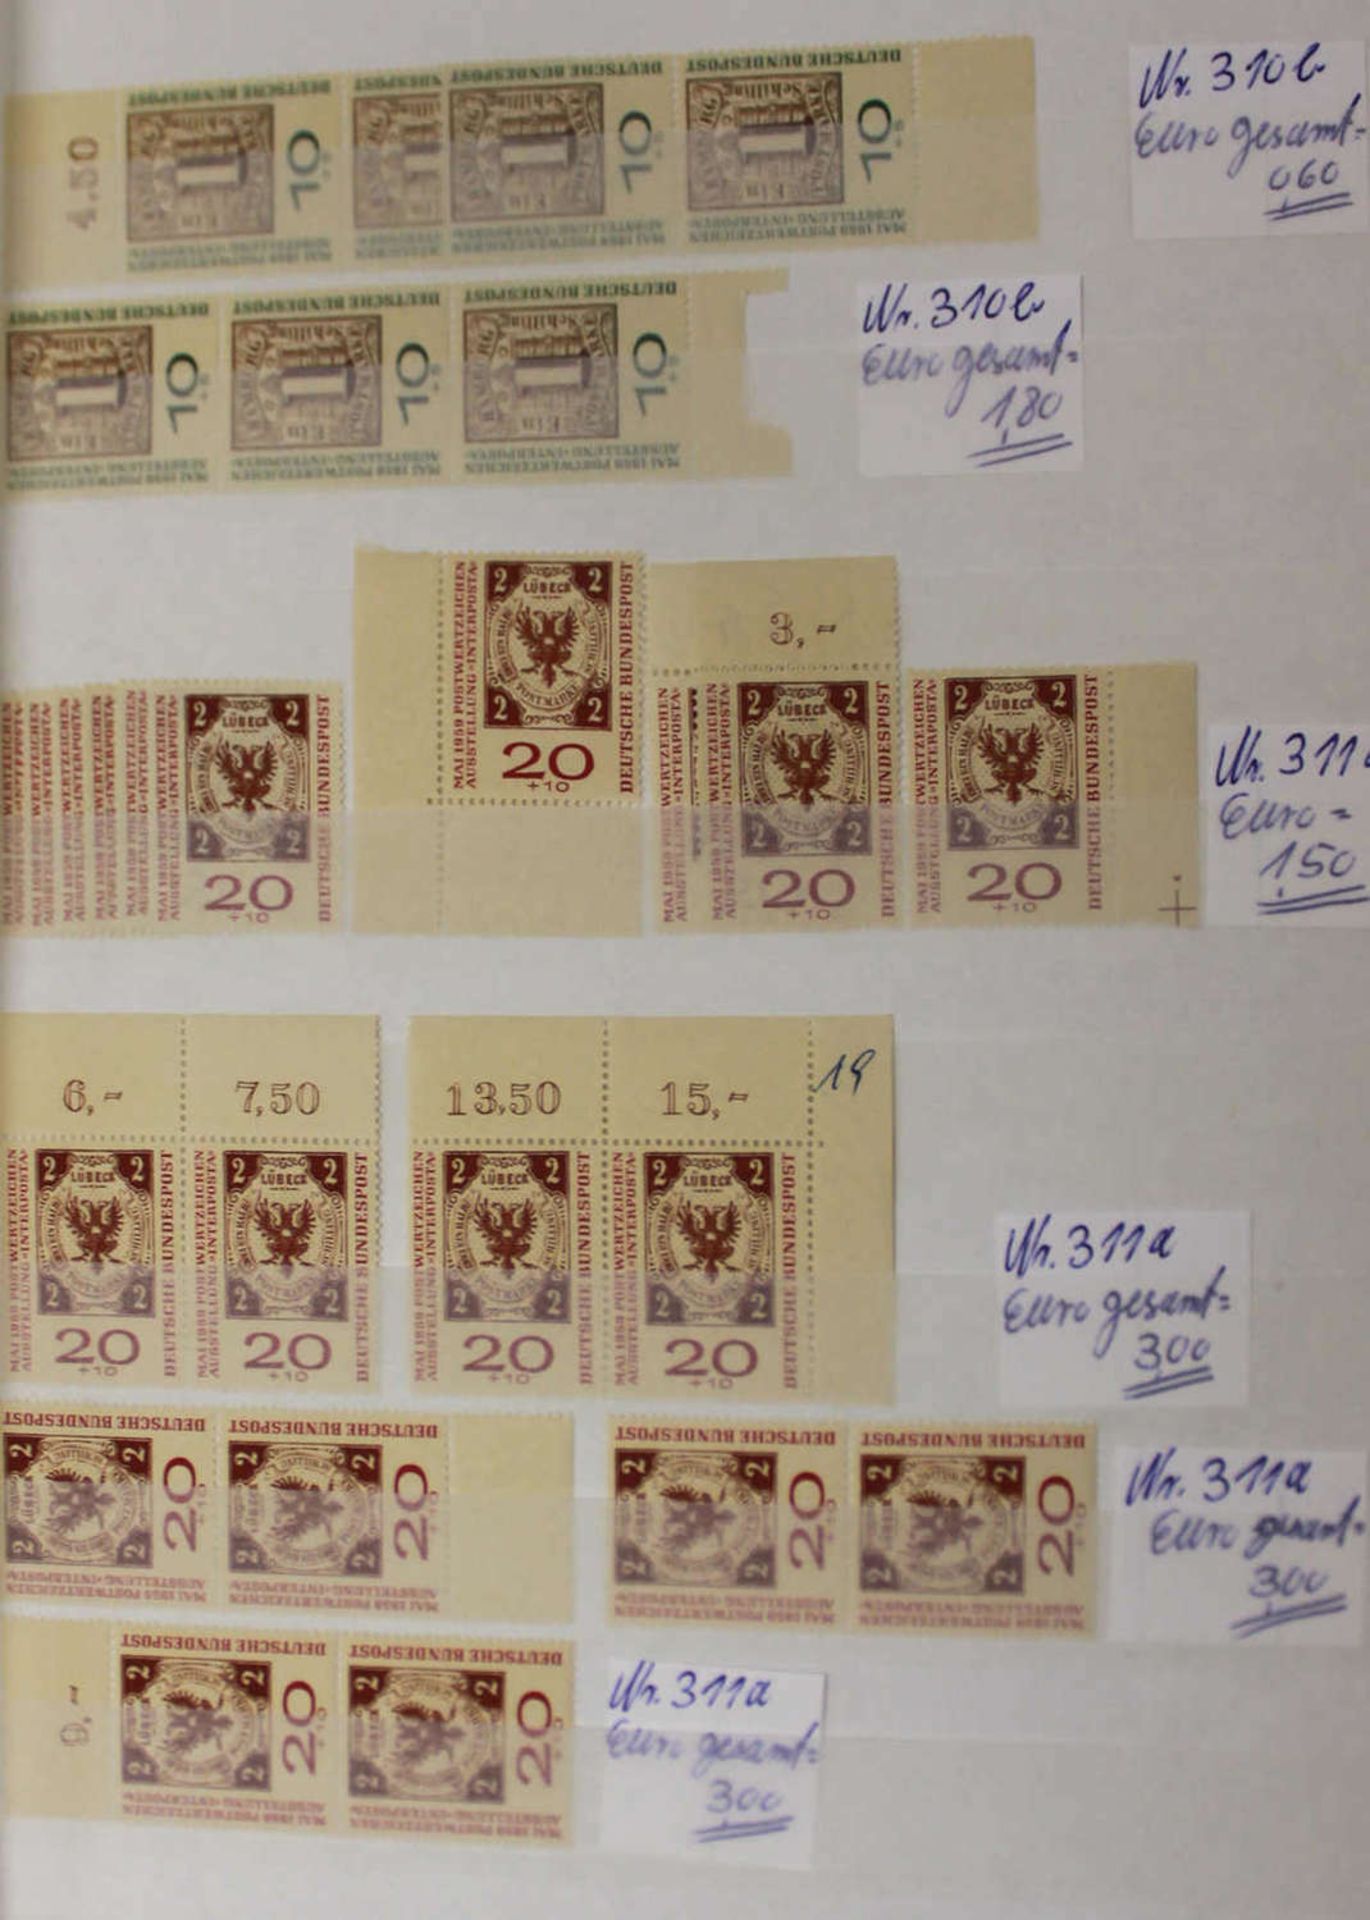 Bundesrepublik Deutschland, 1952 - 1999 postfrische Dublettenpartie besonders reichhaltig ab etwa - Bild 3 aus 3